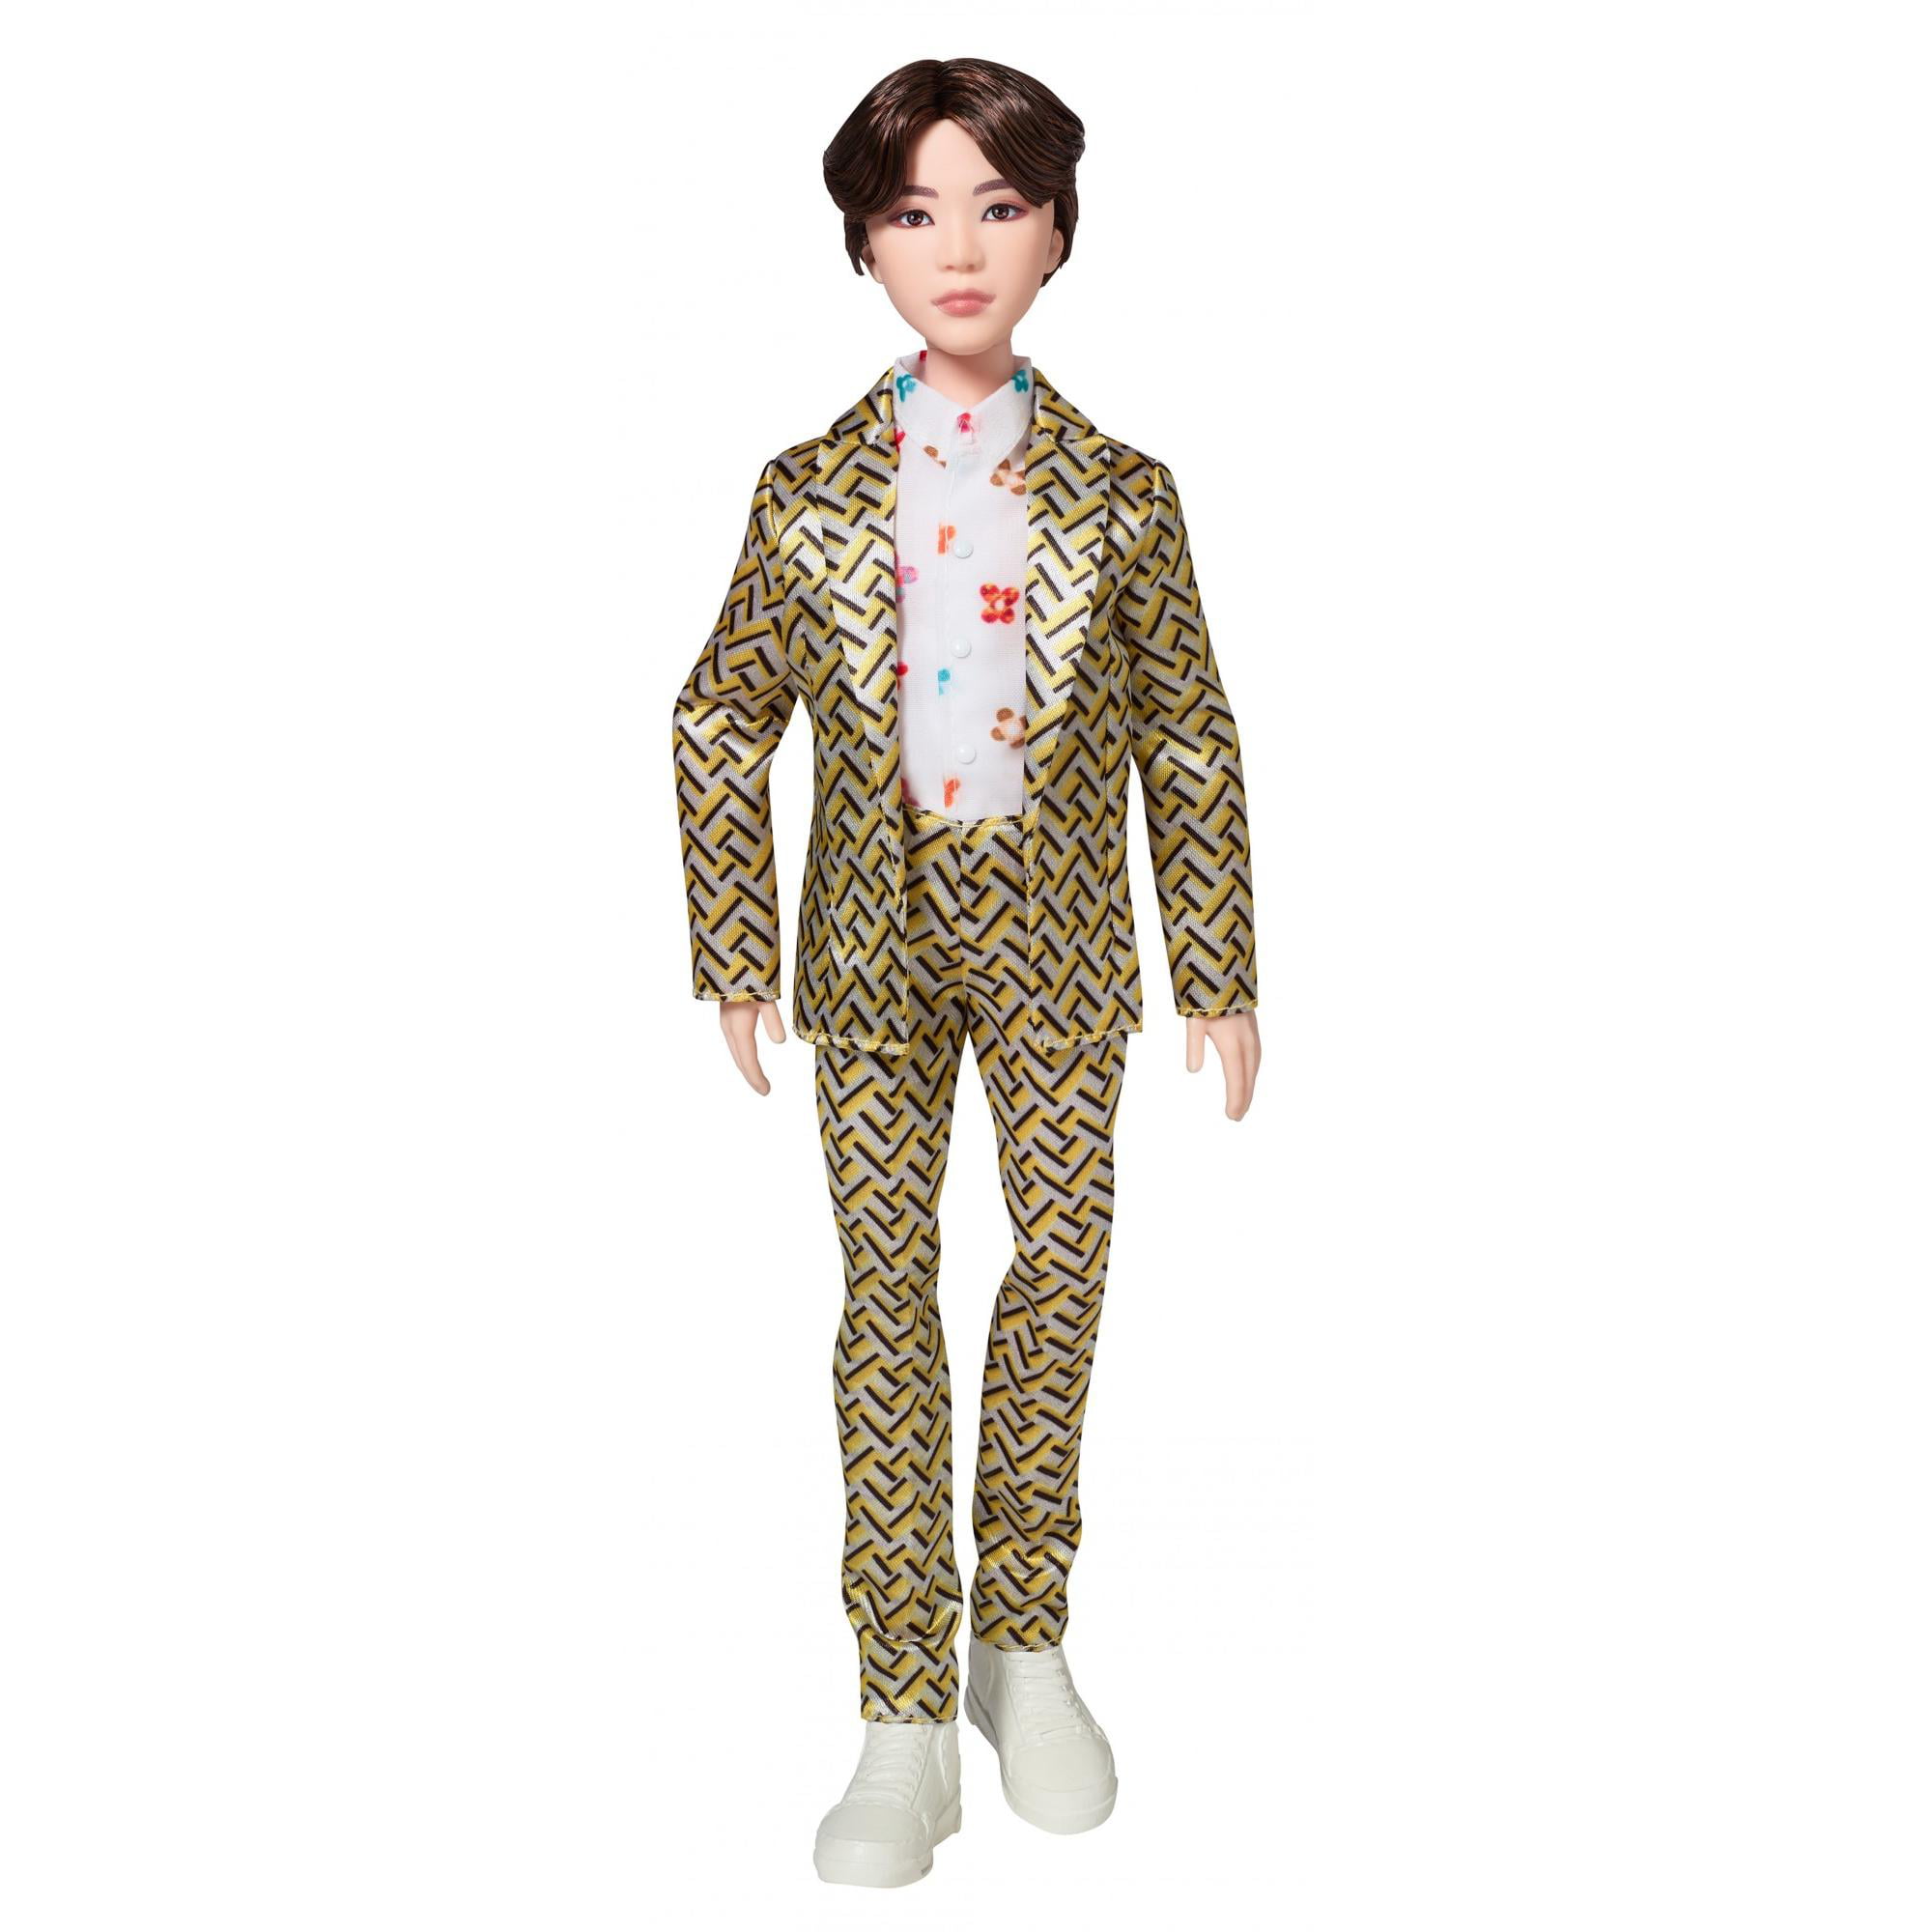 BTS SUGA Idol Doll - Walmart.com 